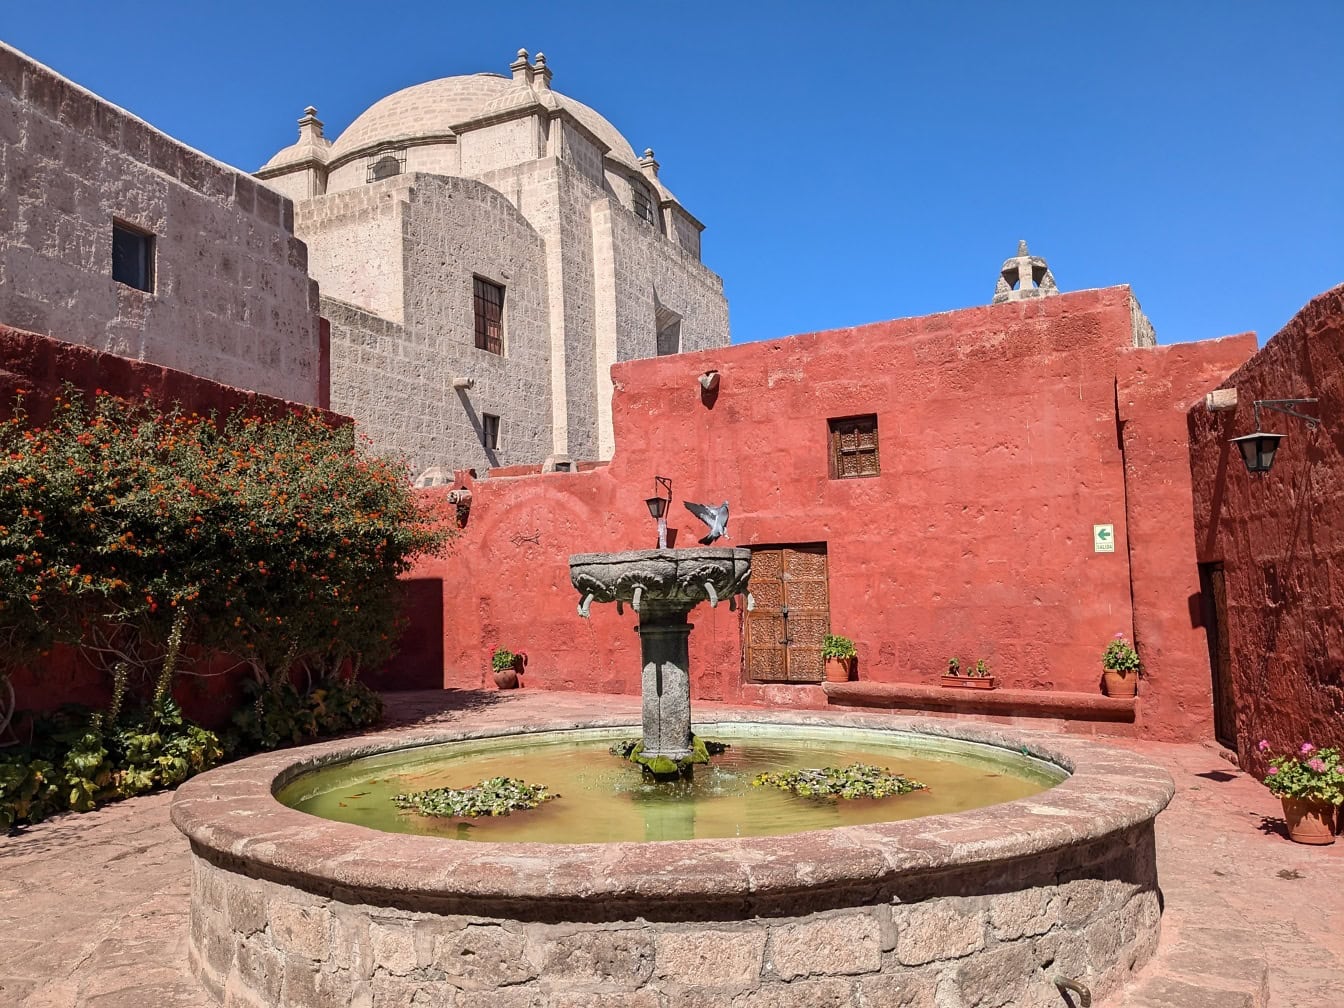 Uma fonte em um pátio com igreja com cúpula ao fundo, no mosteiro de Santa Catalina de Siena em Arequipa, no Peru